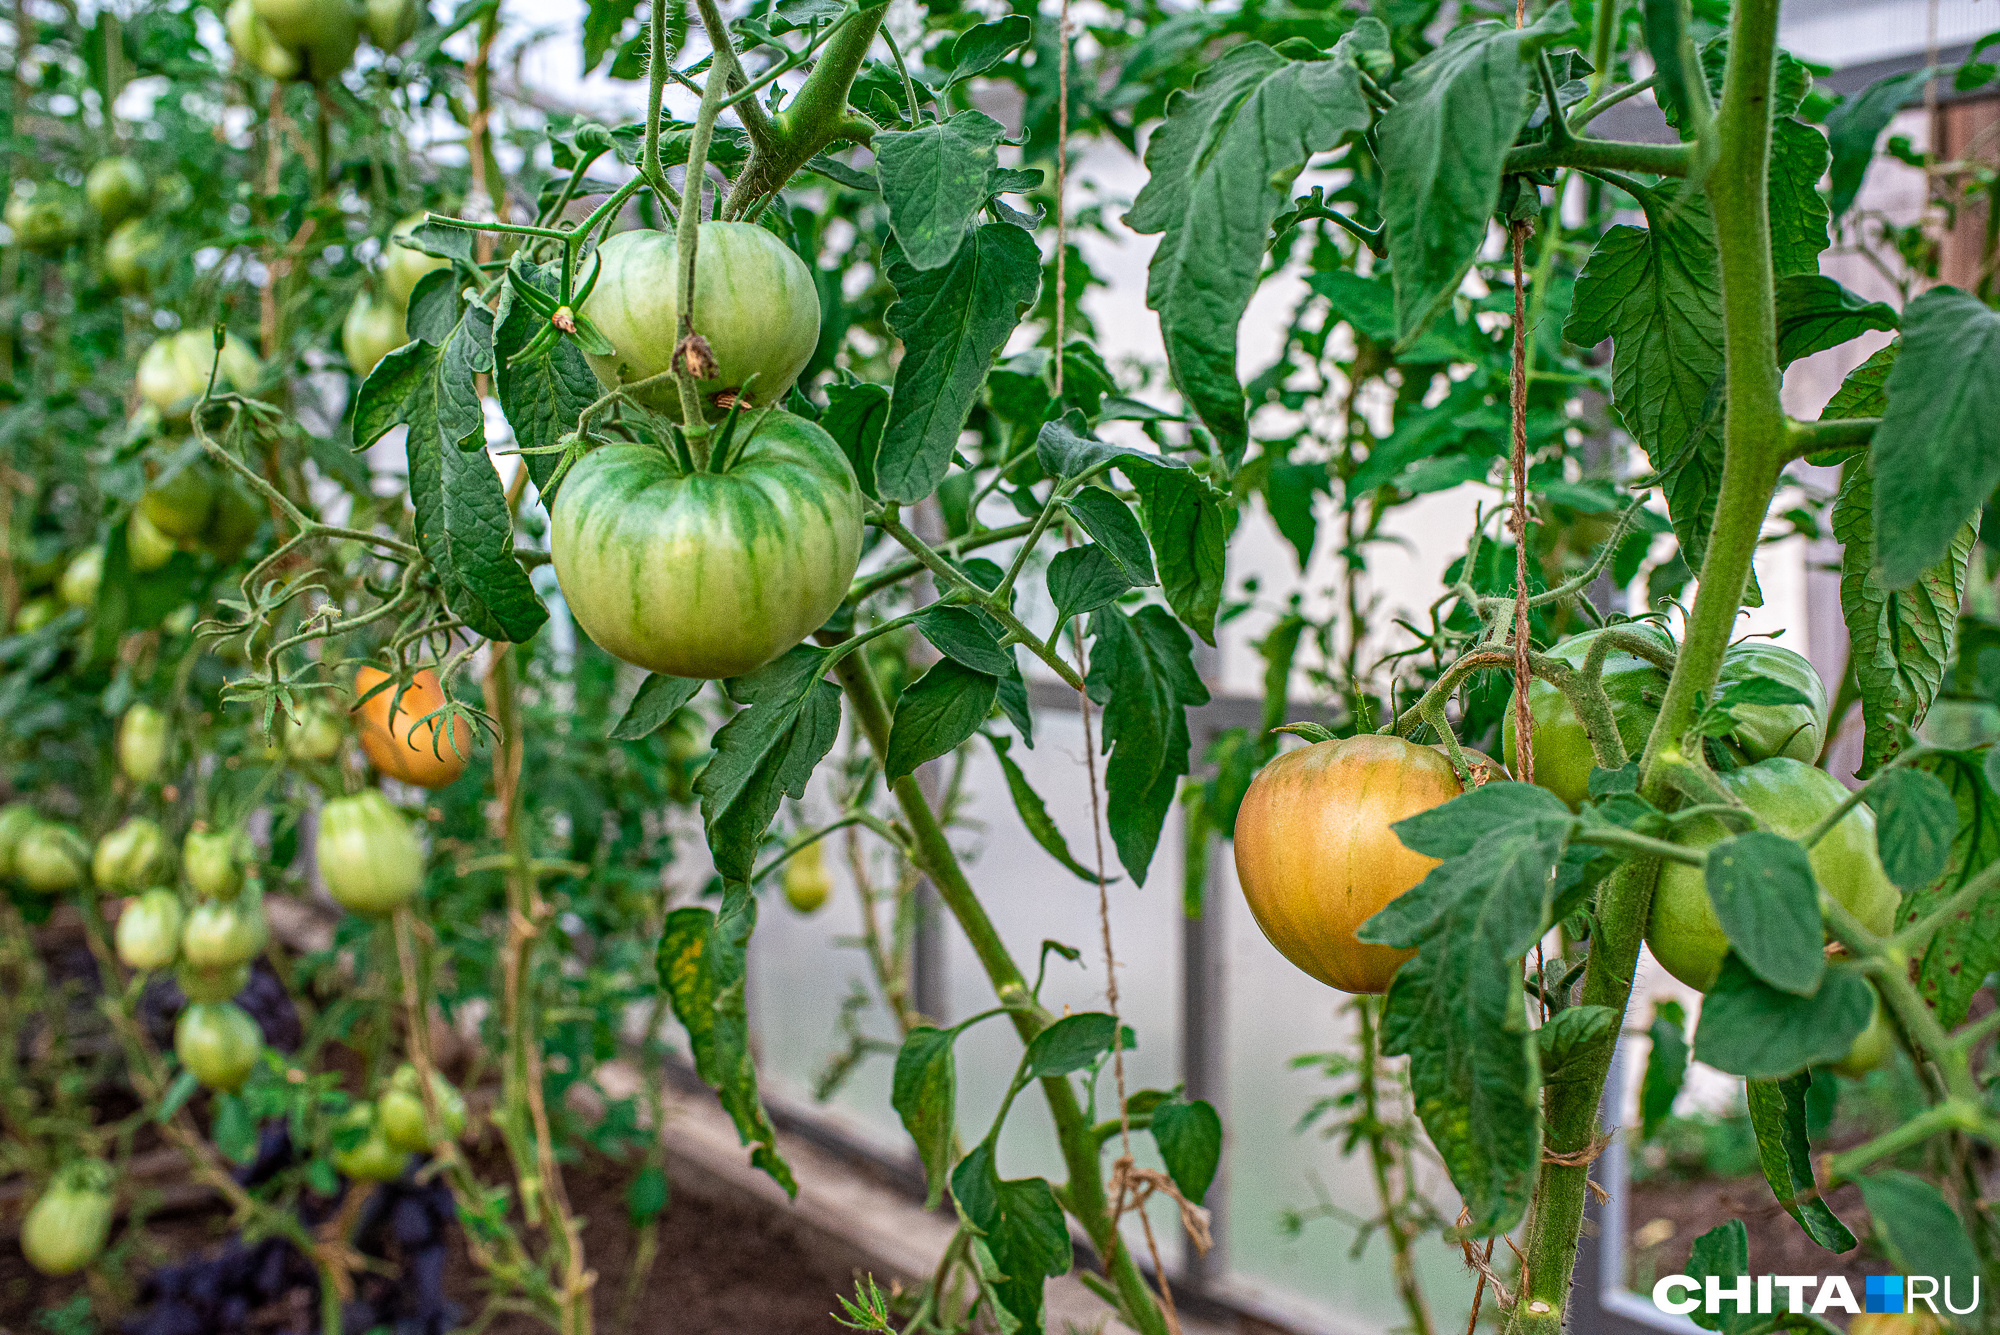 Рассаду помидоров можно держать на подоконнике